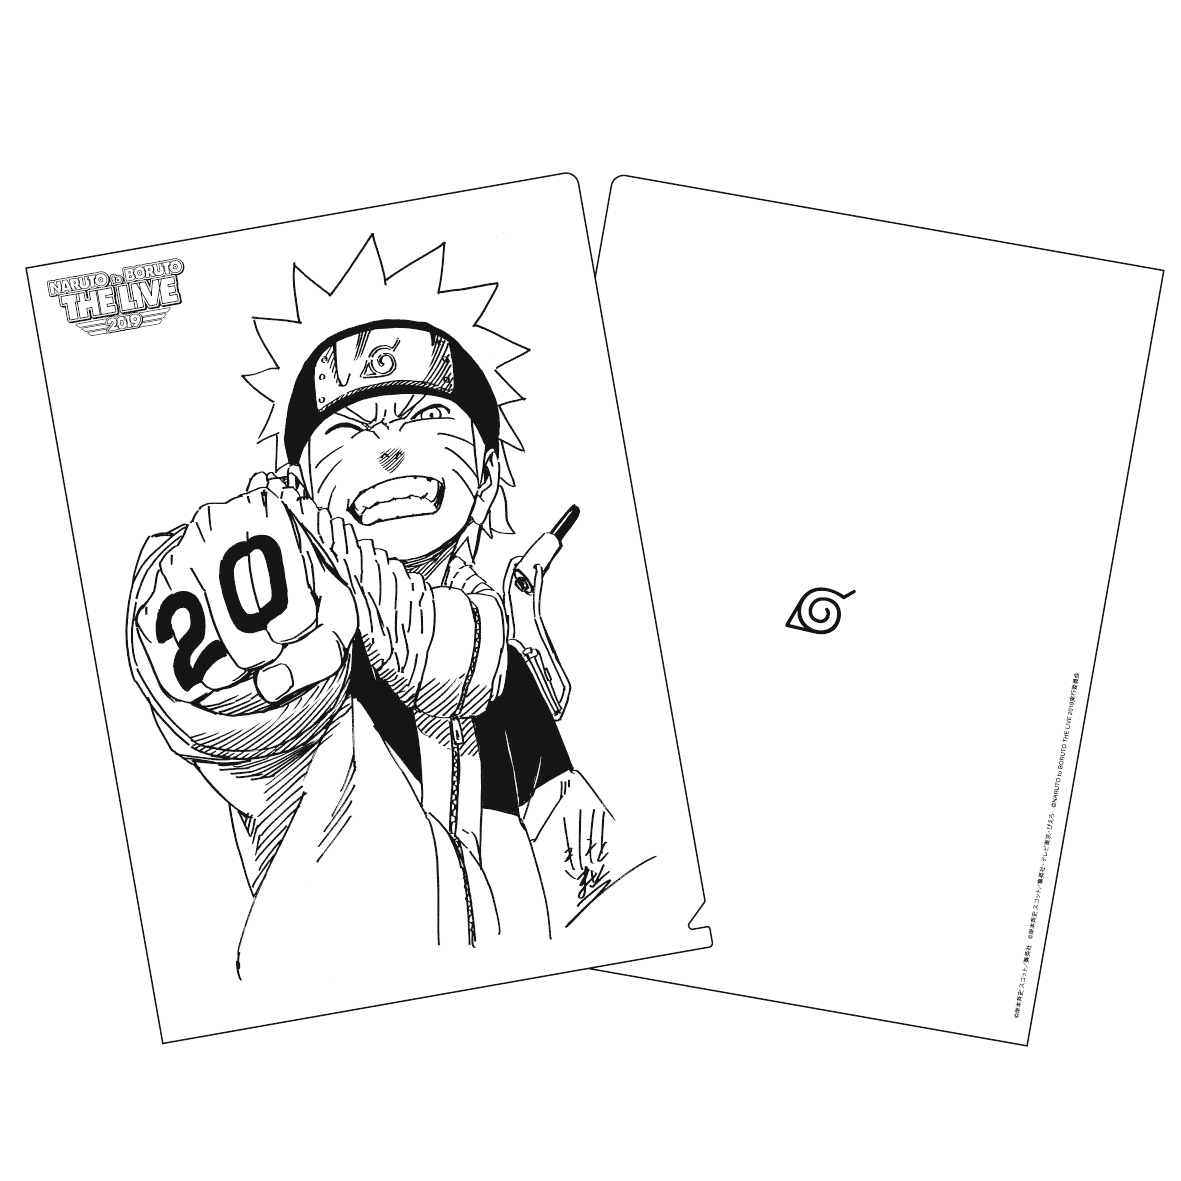 Naruto ナルト 20周年記念 岸本斉史描き下ろしイラストグッズを